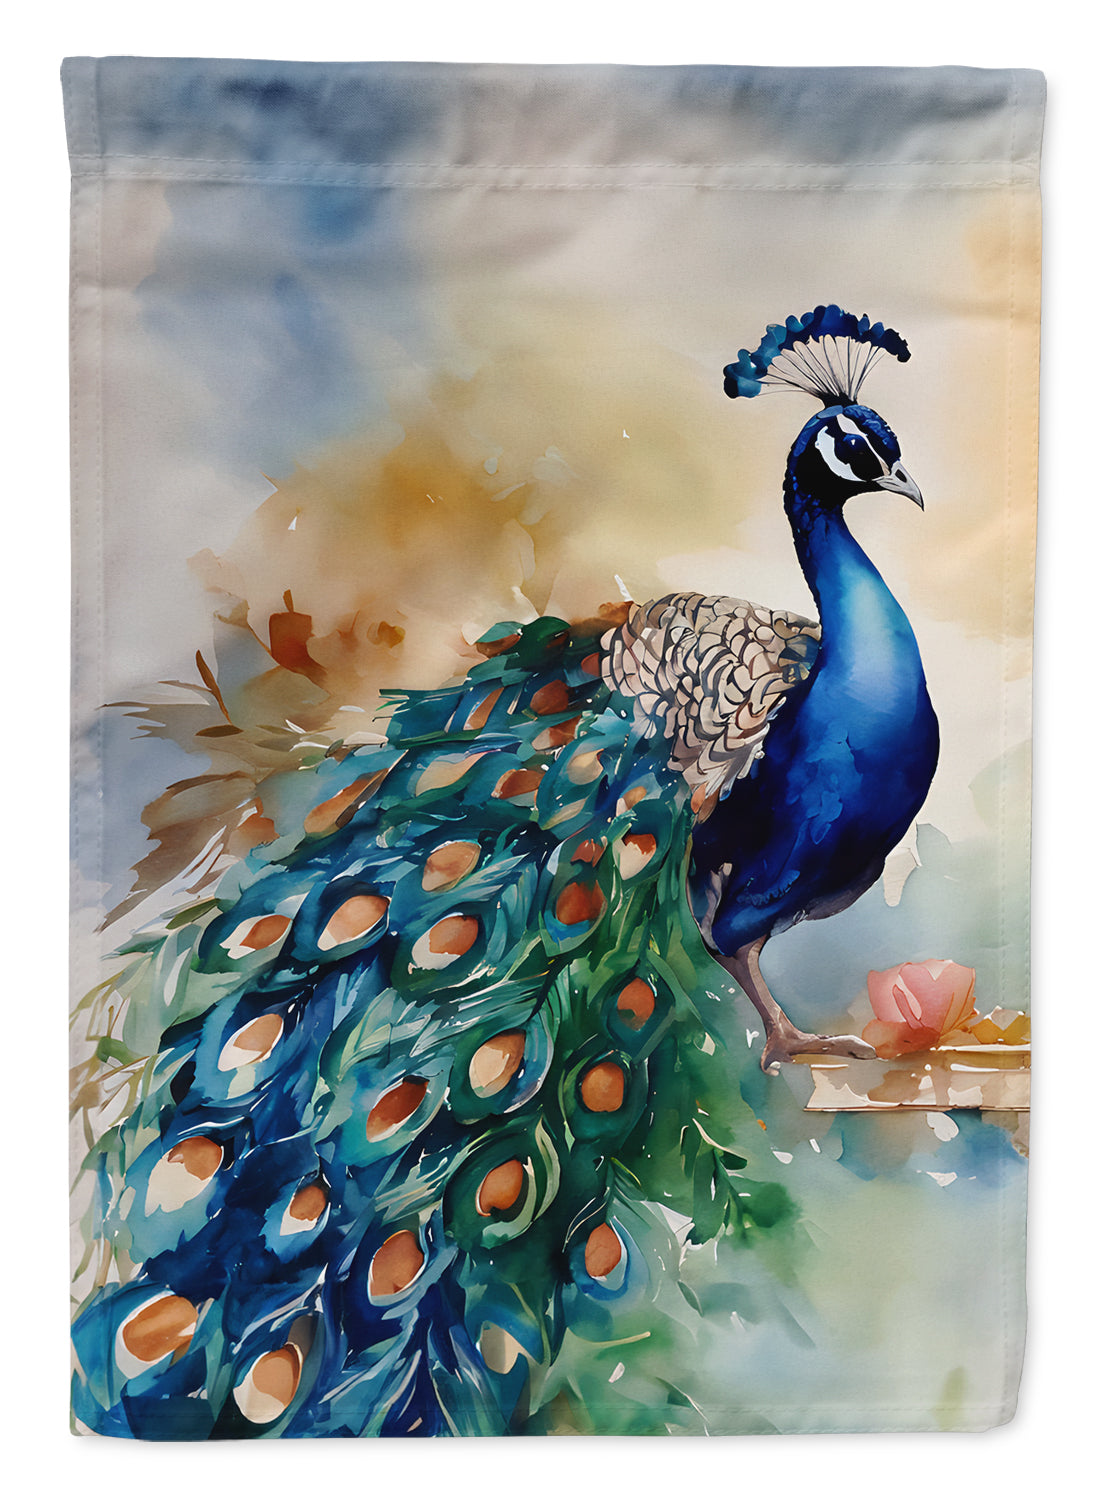 Buy this Peacock Garden Flag